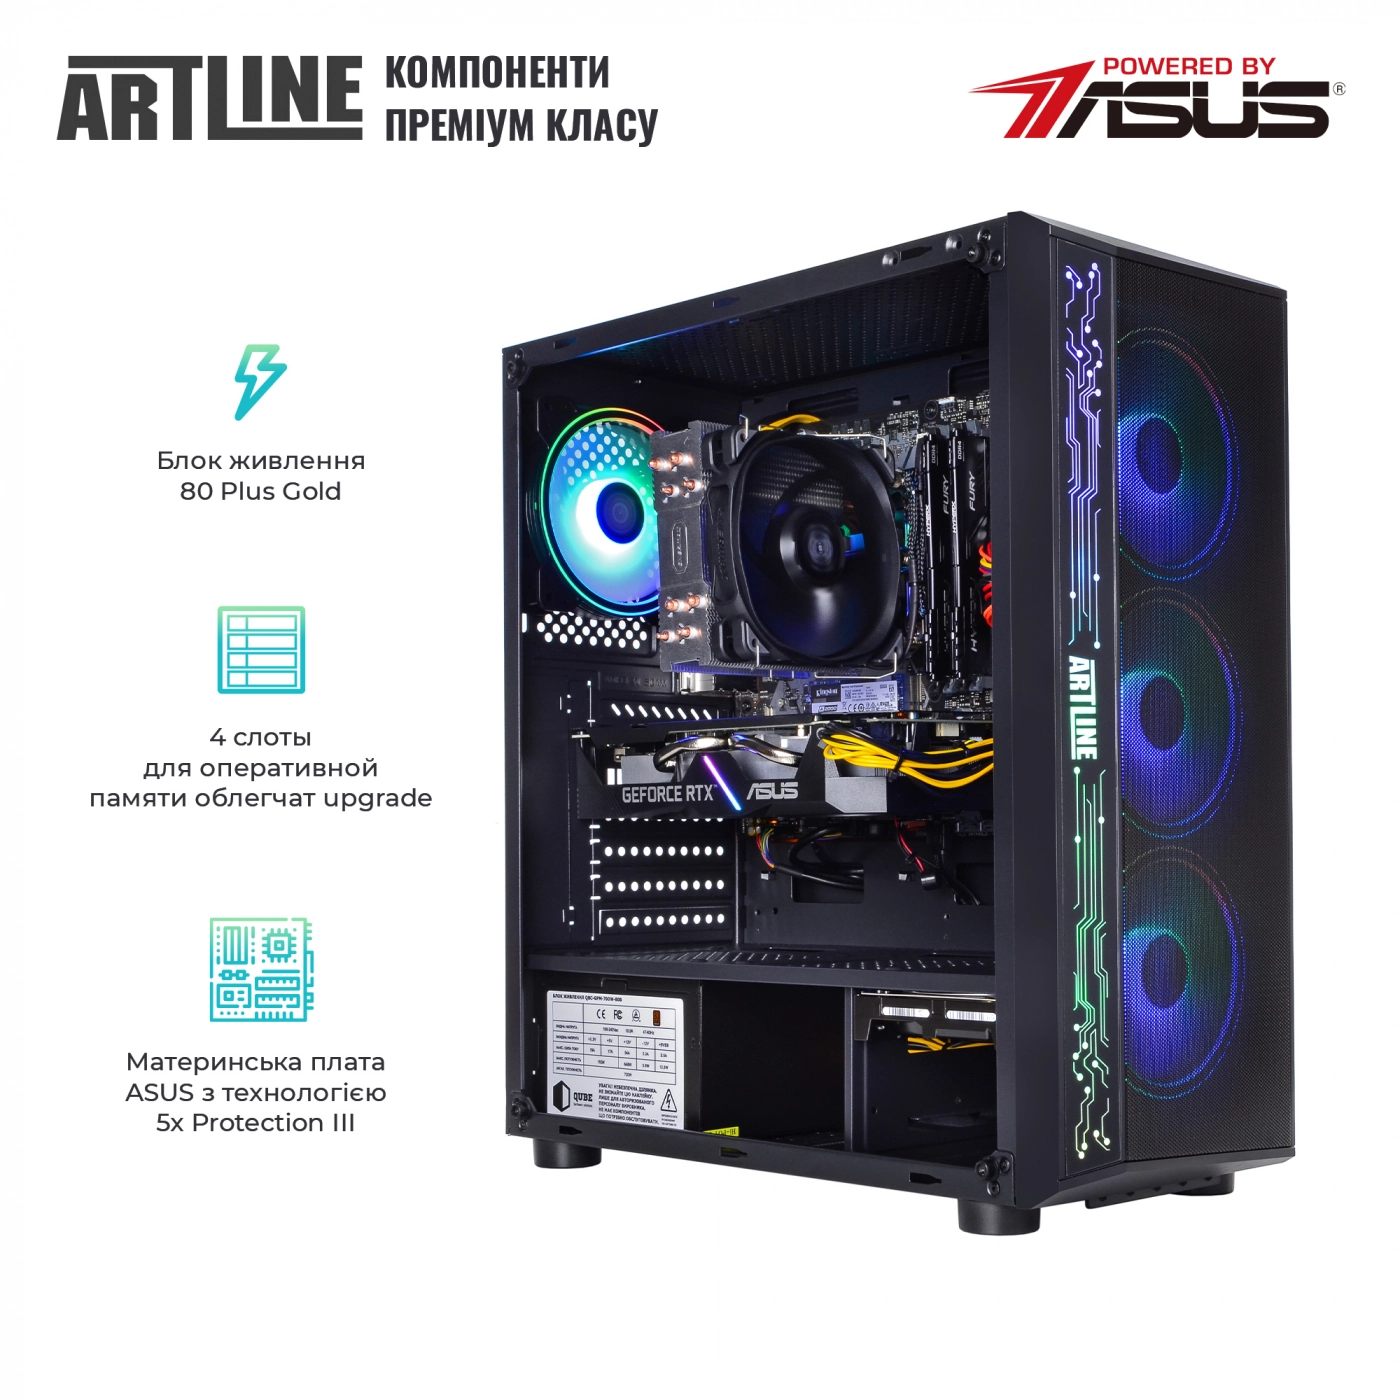 Купить Компьютер ARTLINE Gaming X73v28 - фото 2